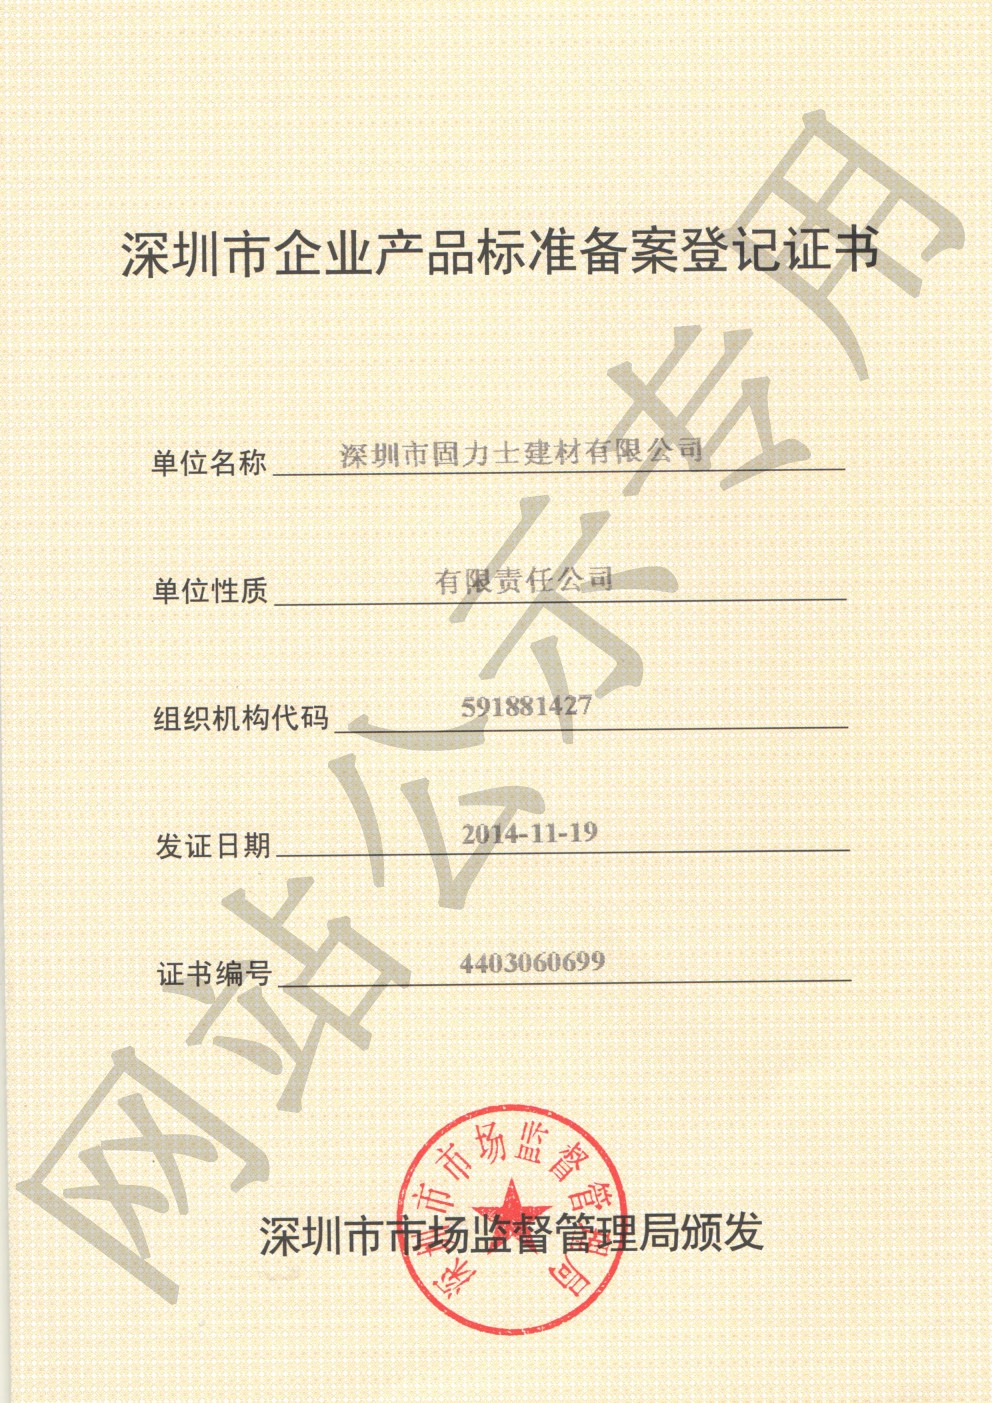 王五镇企业产品标准登记证书